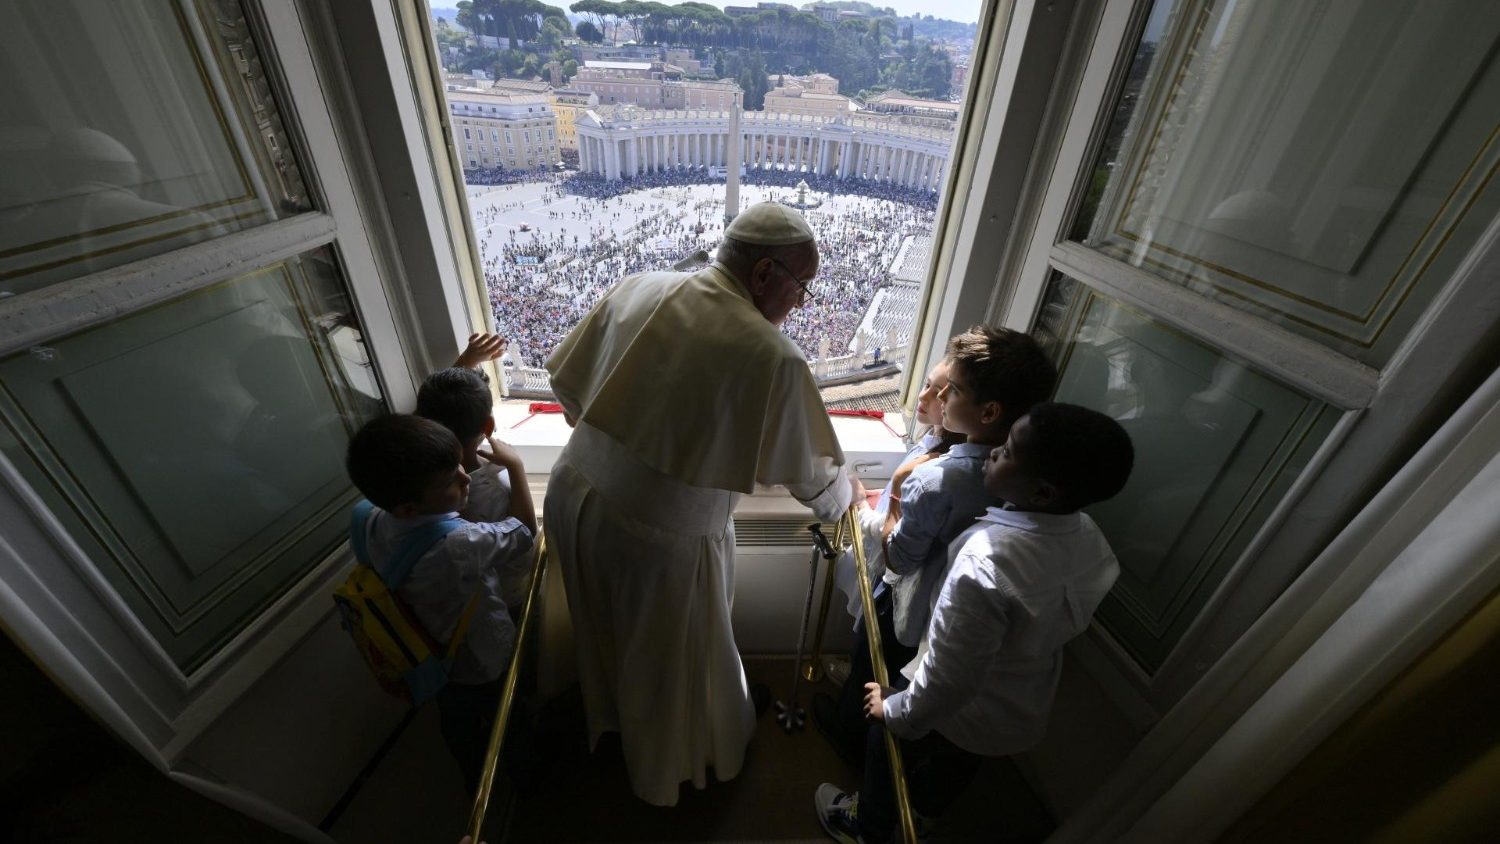 Corriere della Sera: l'incontro del Papa con i bambini sarà "un’onda di pace e speranza"